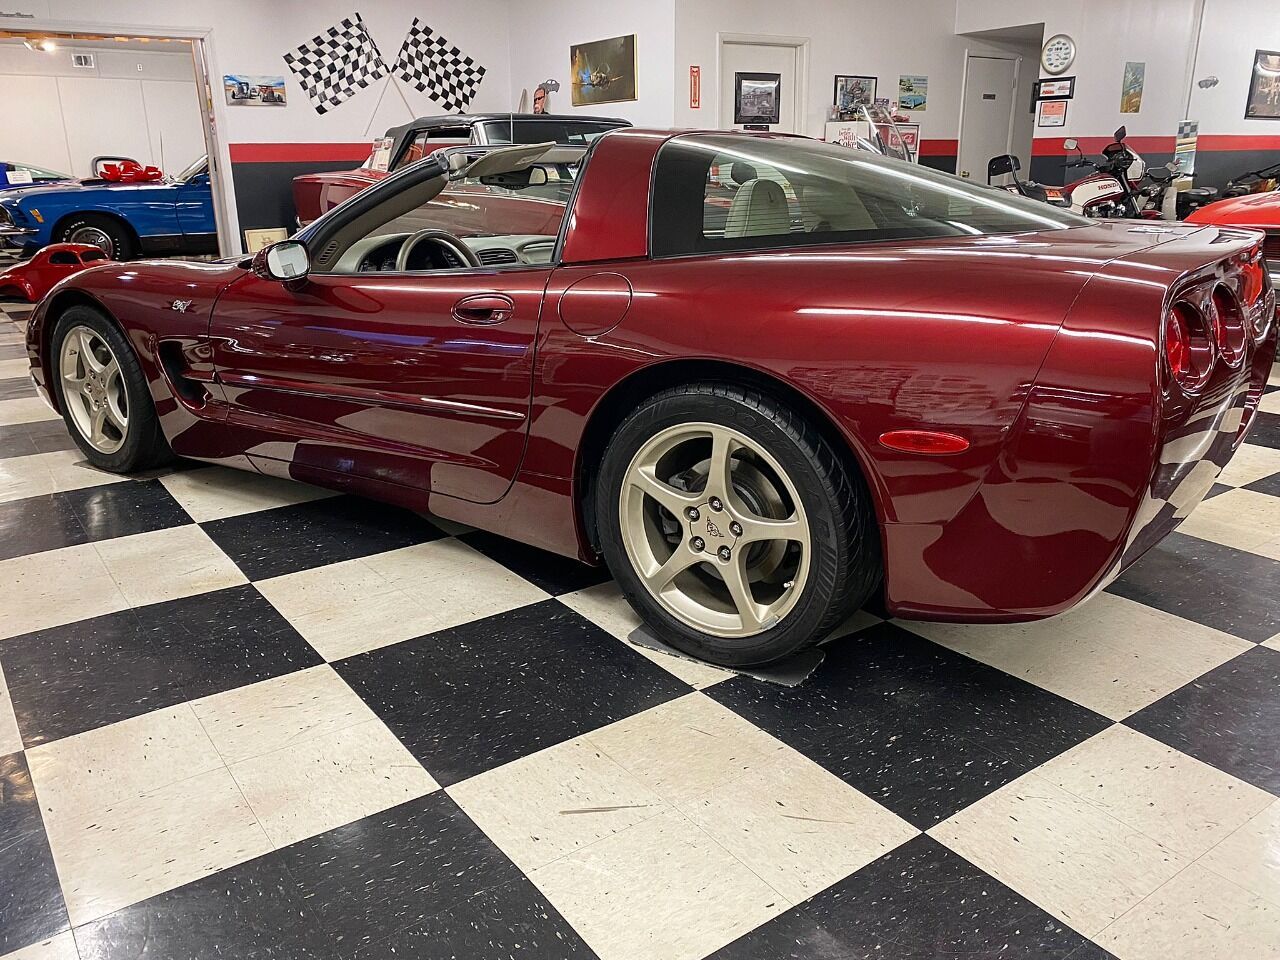 2003 Corvette Image